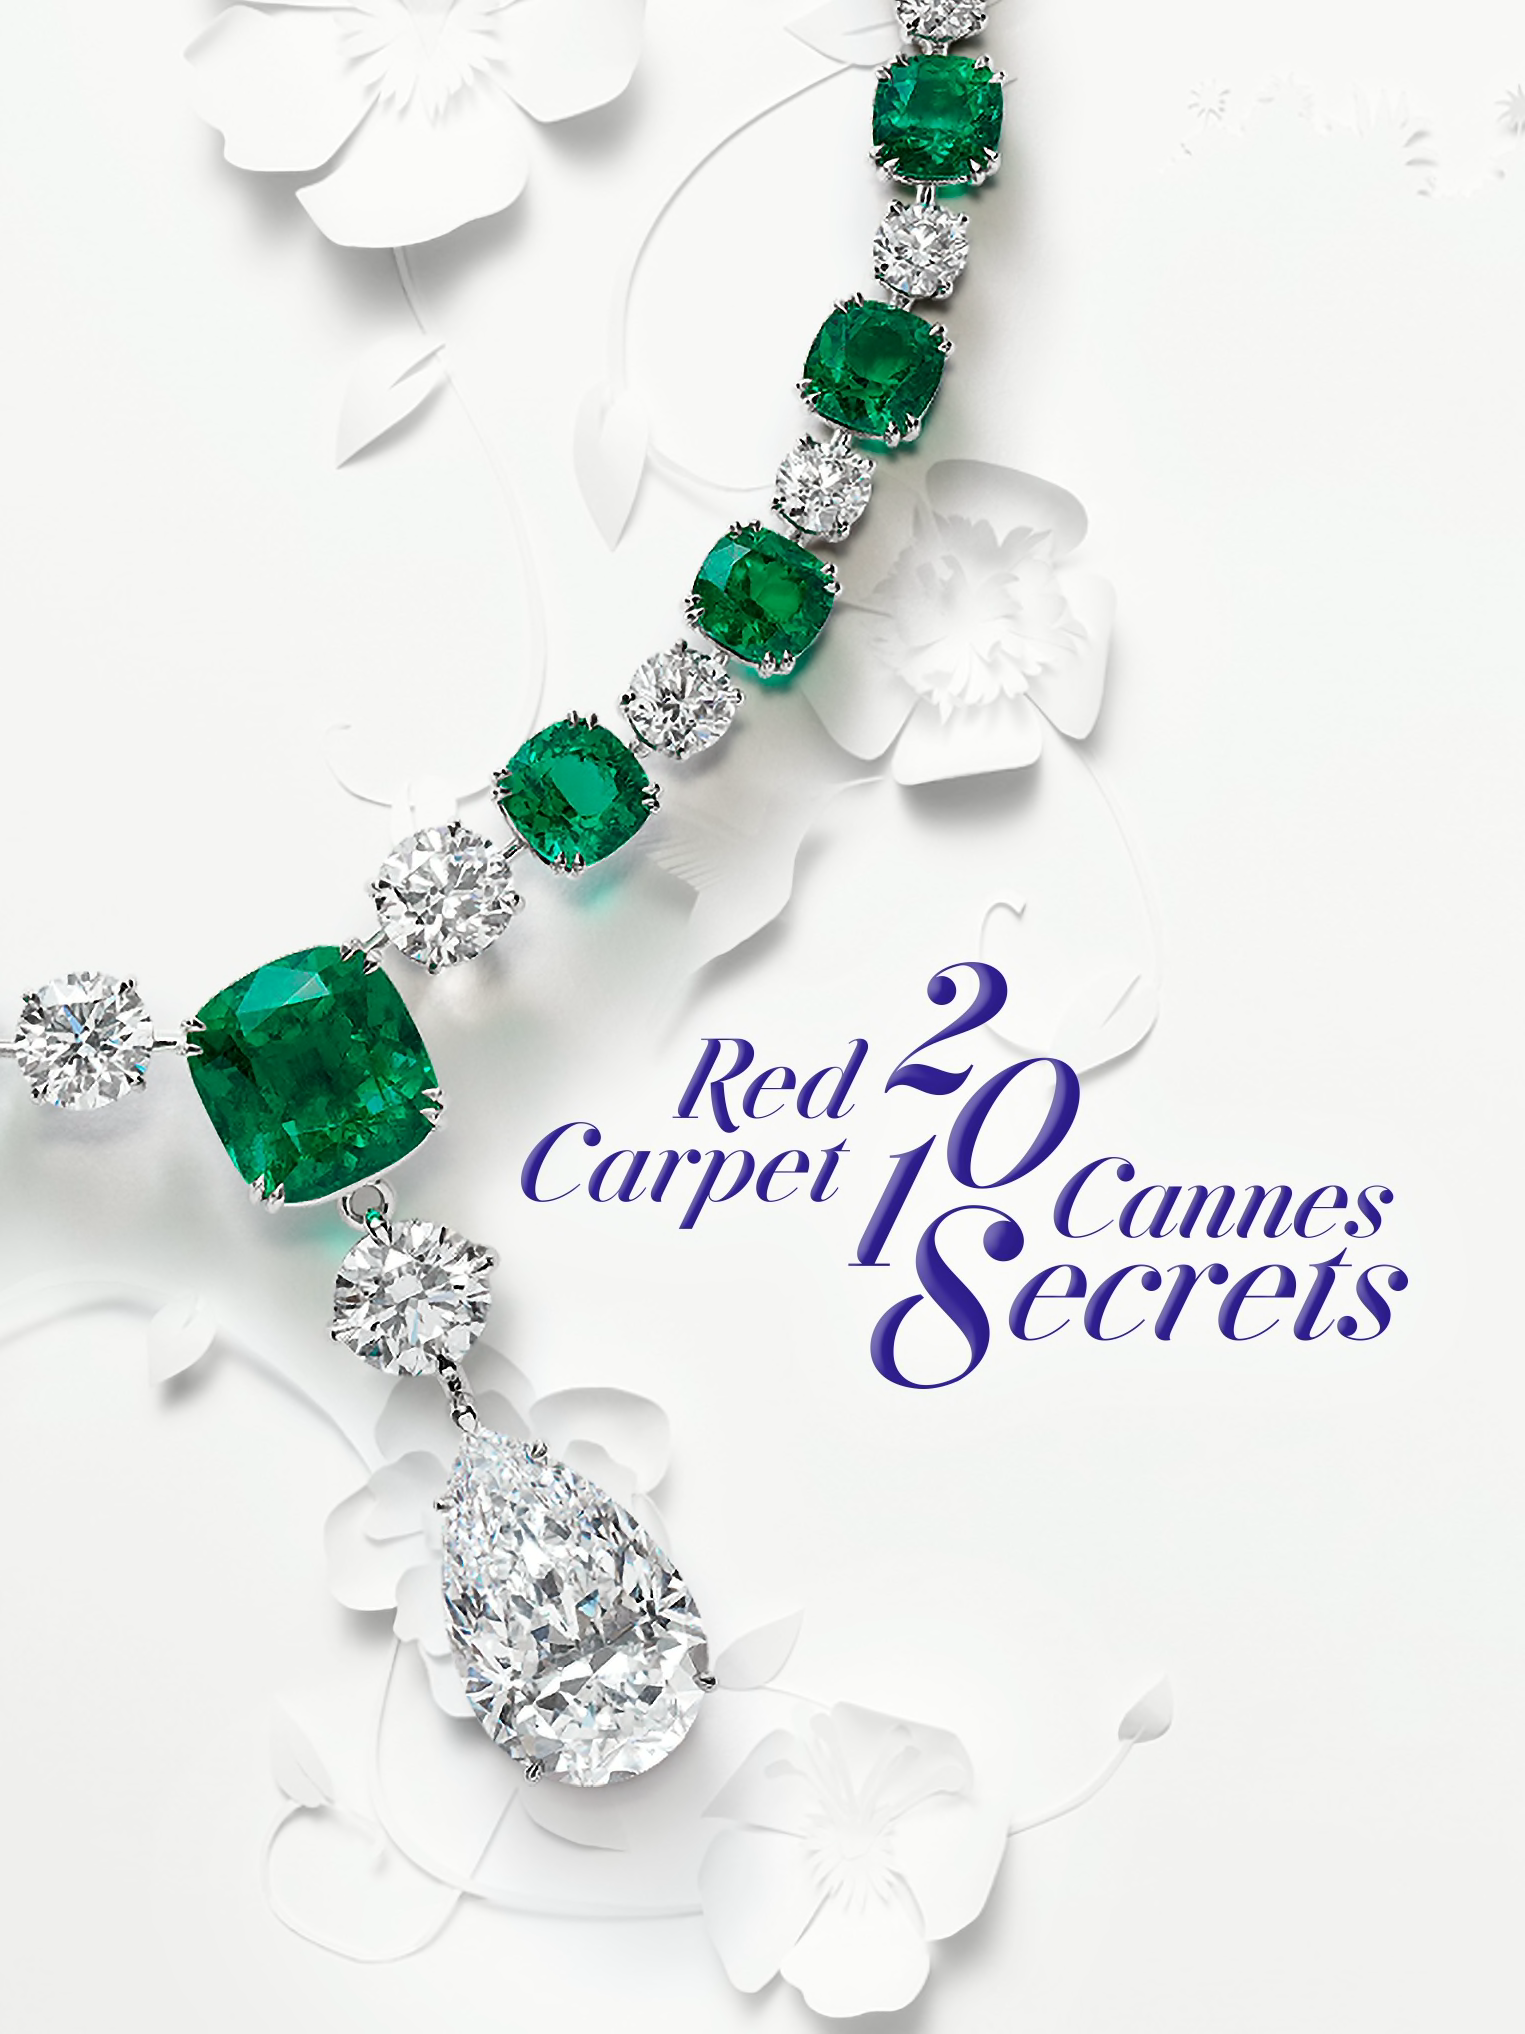 Заголовок для коллекции Chopard Red Carpet 2018